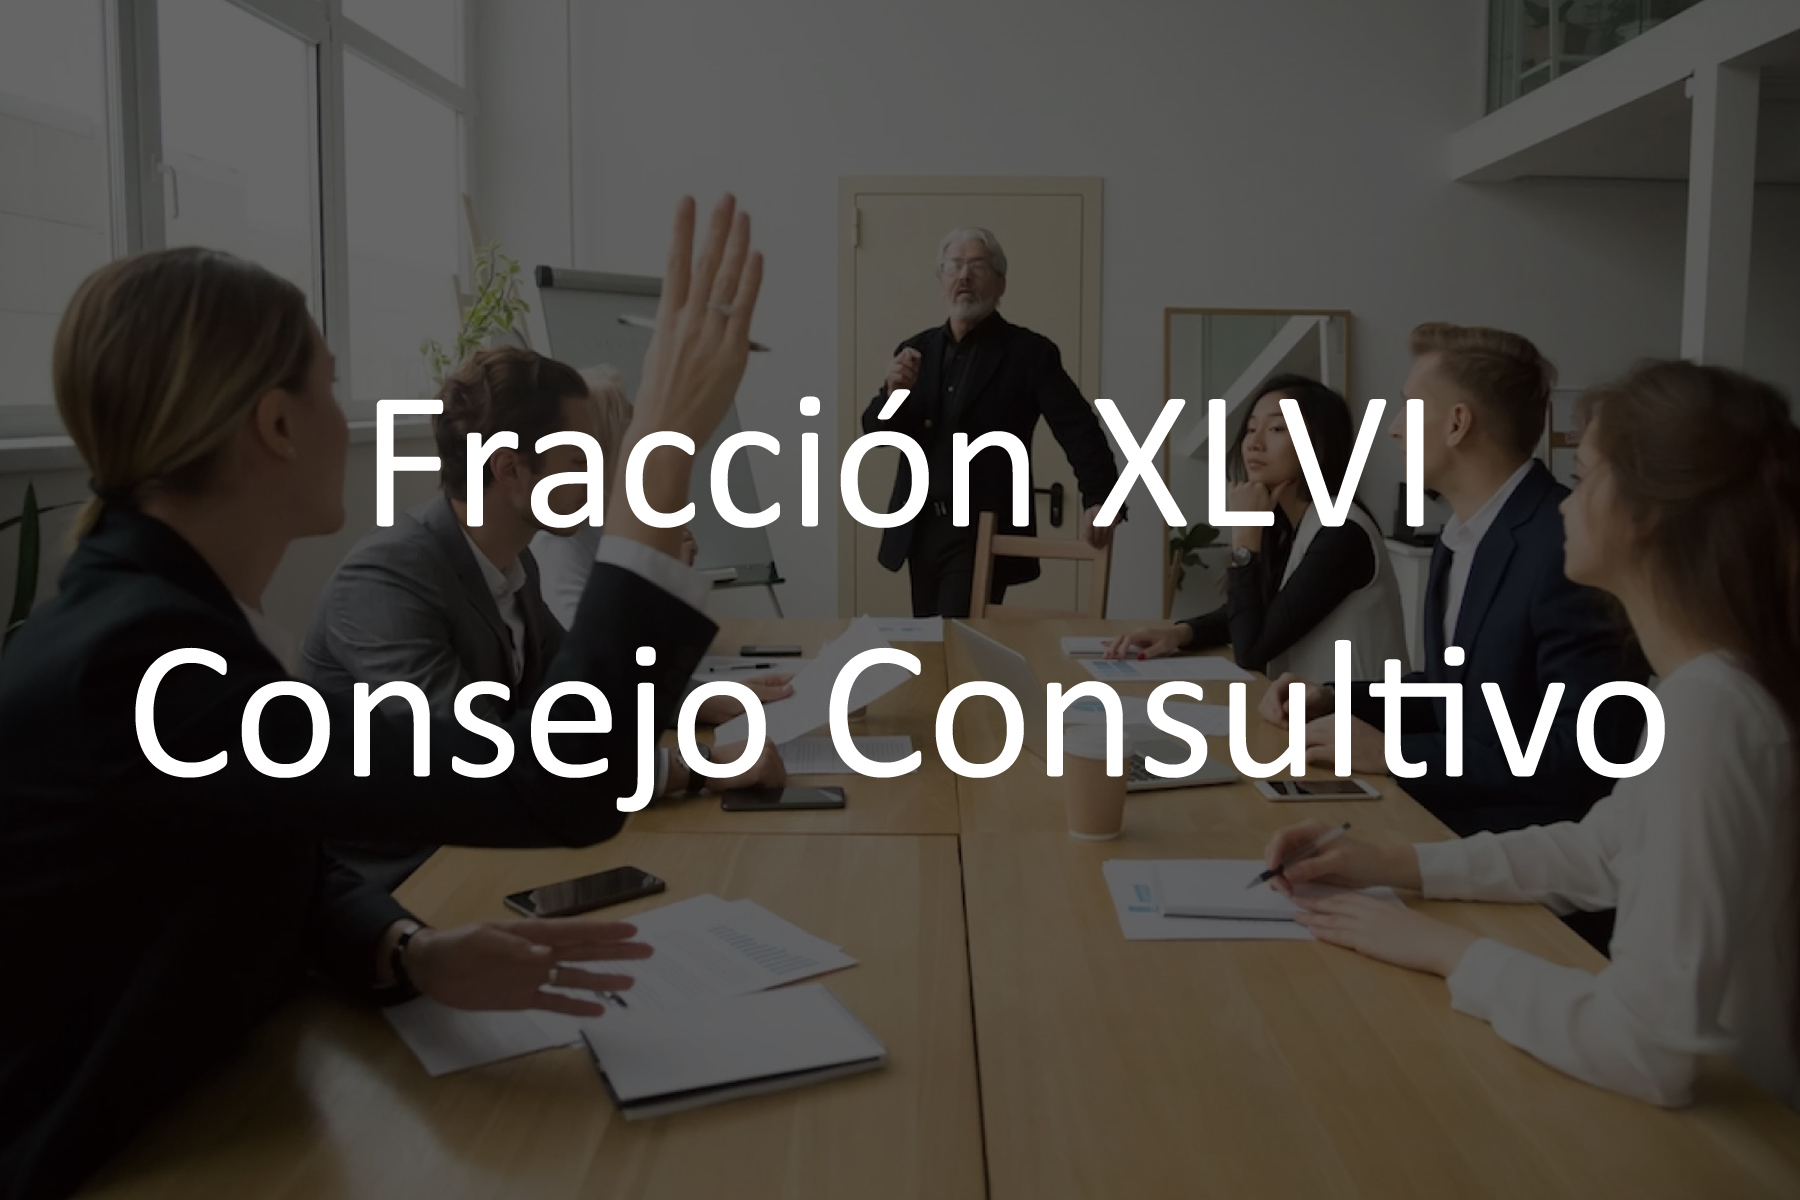 Fracción XLVI Consejo Consultivo